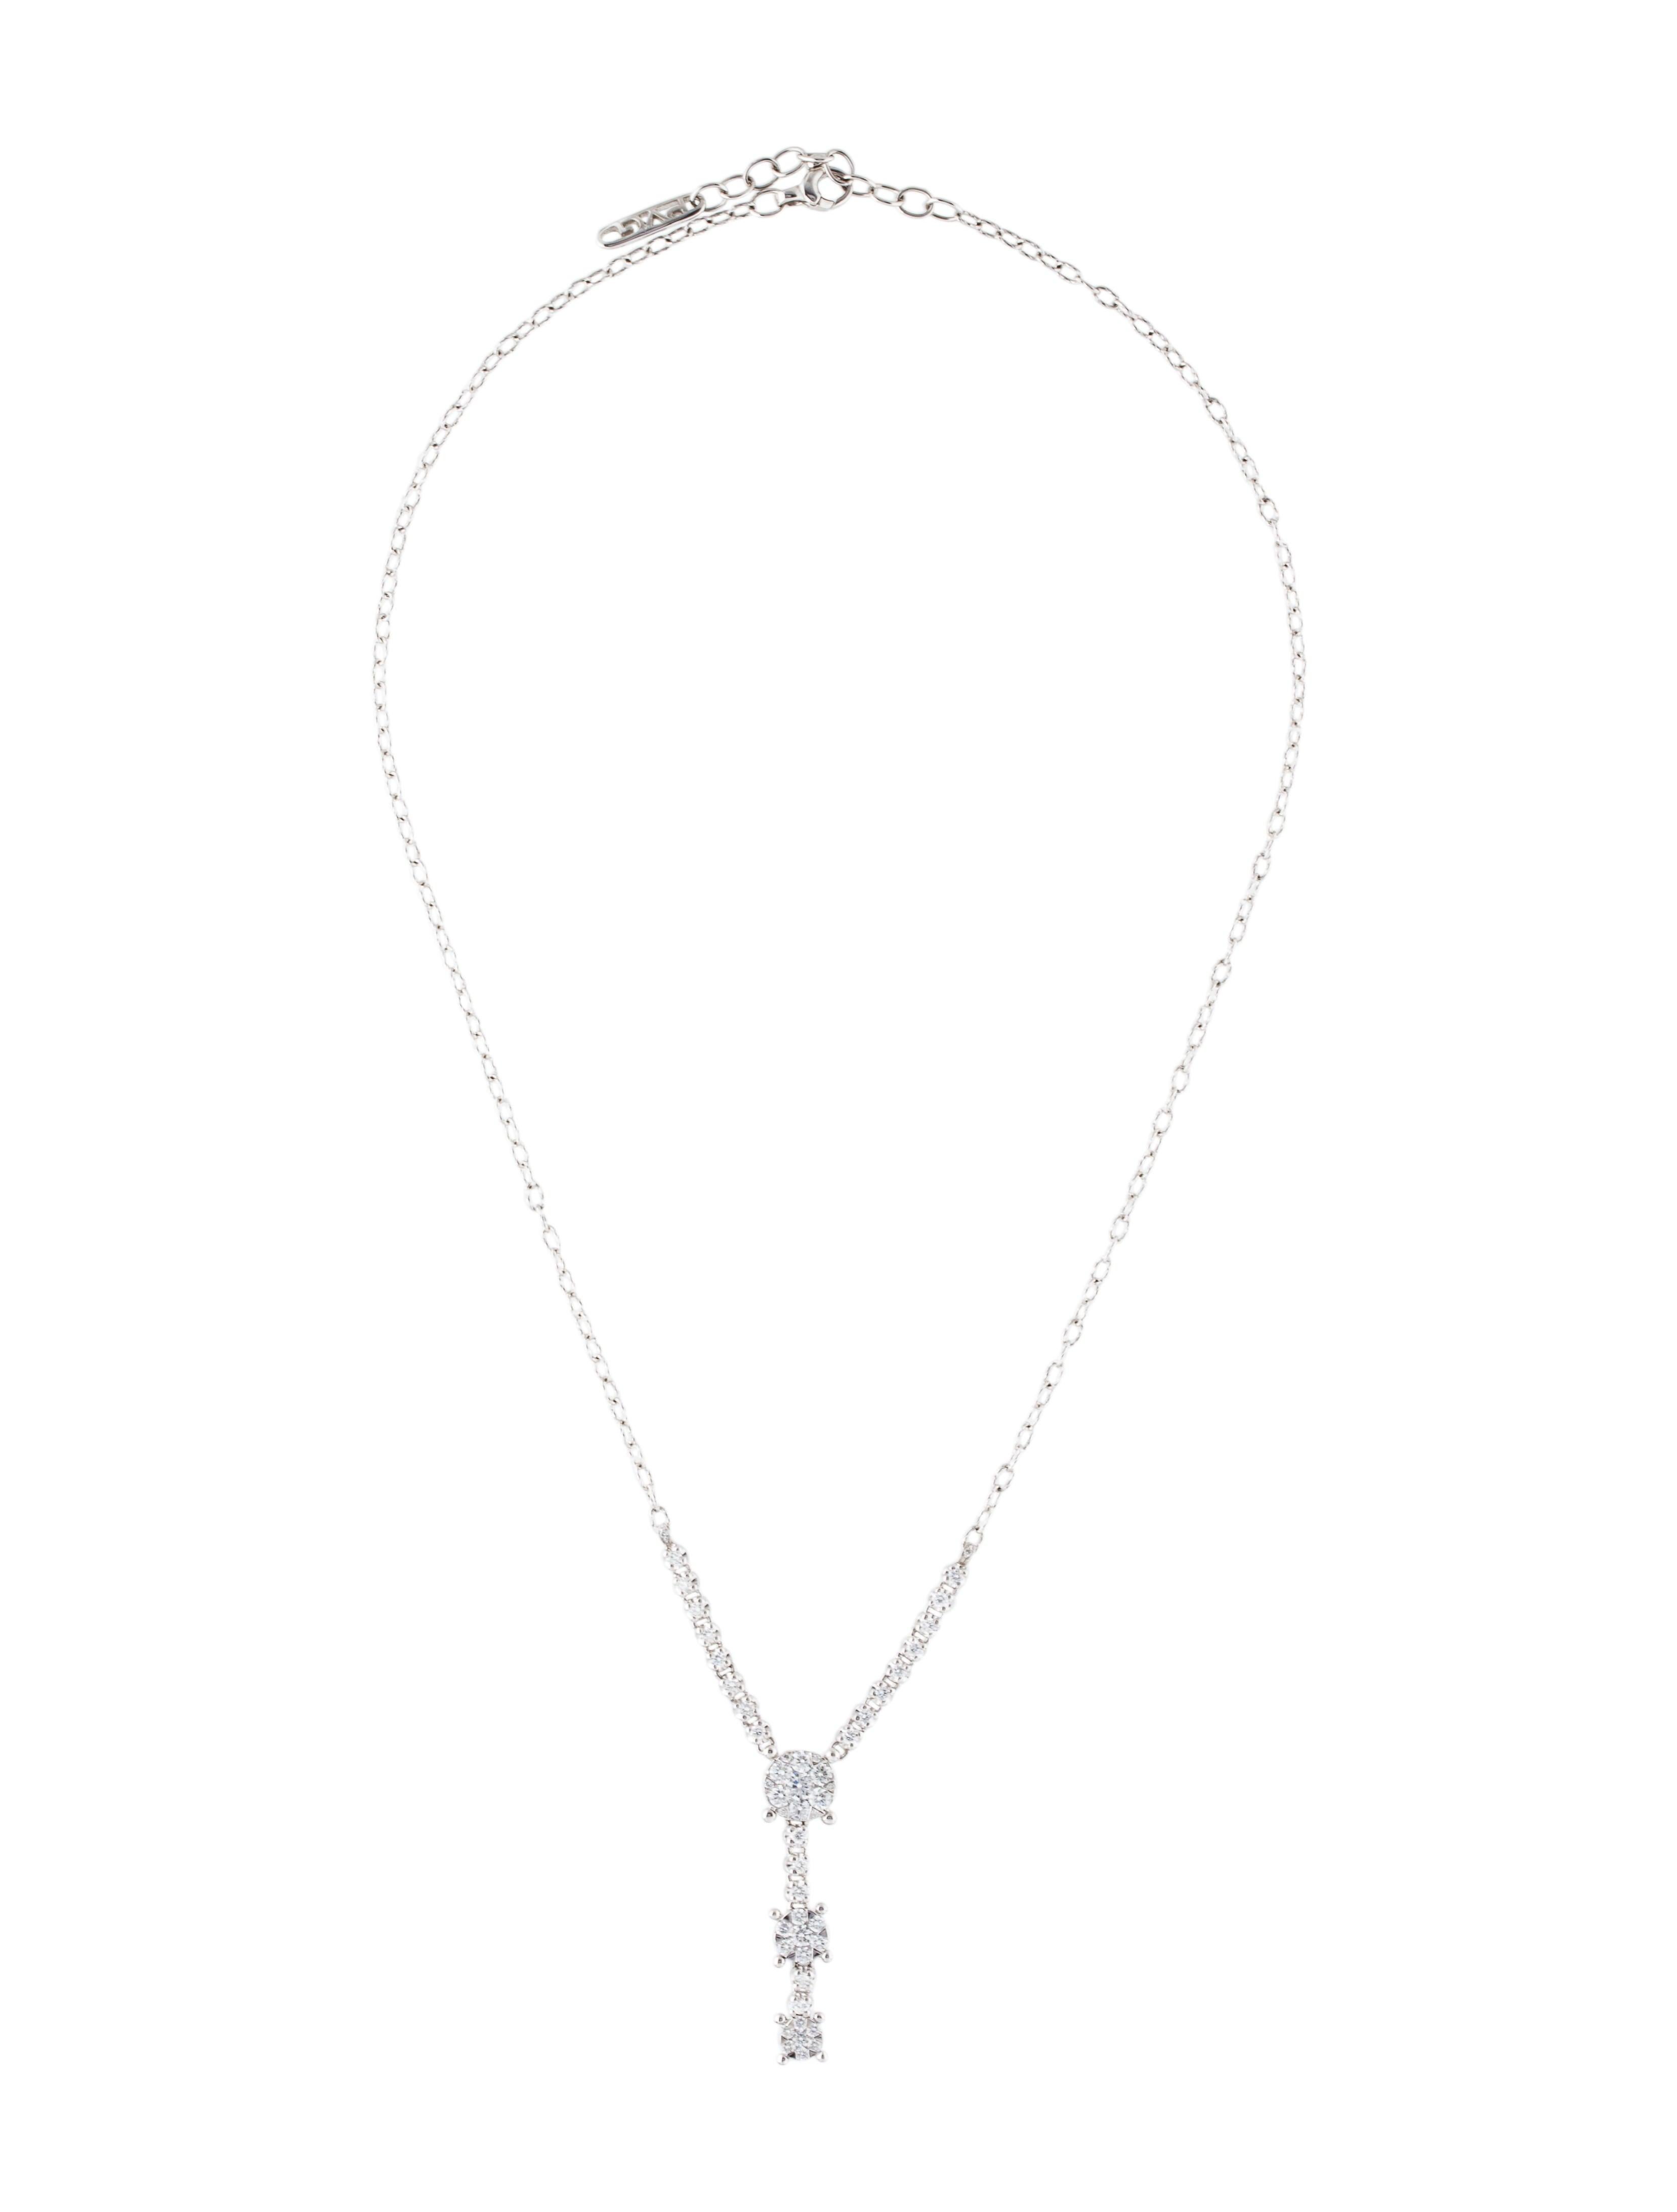 Round Cut Ponte Vecchio Gioielli Diamond Lavalier Necklace For Sale